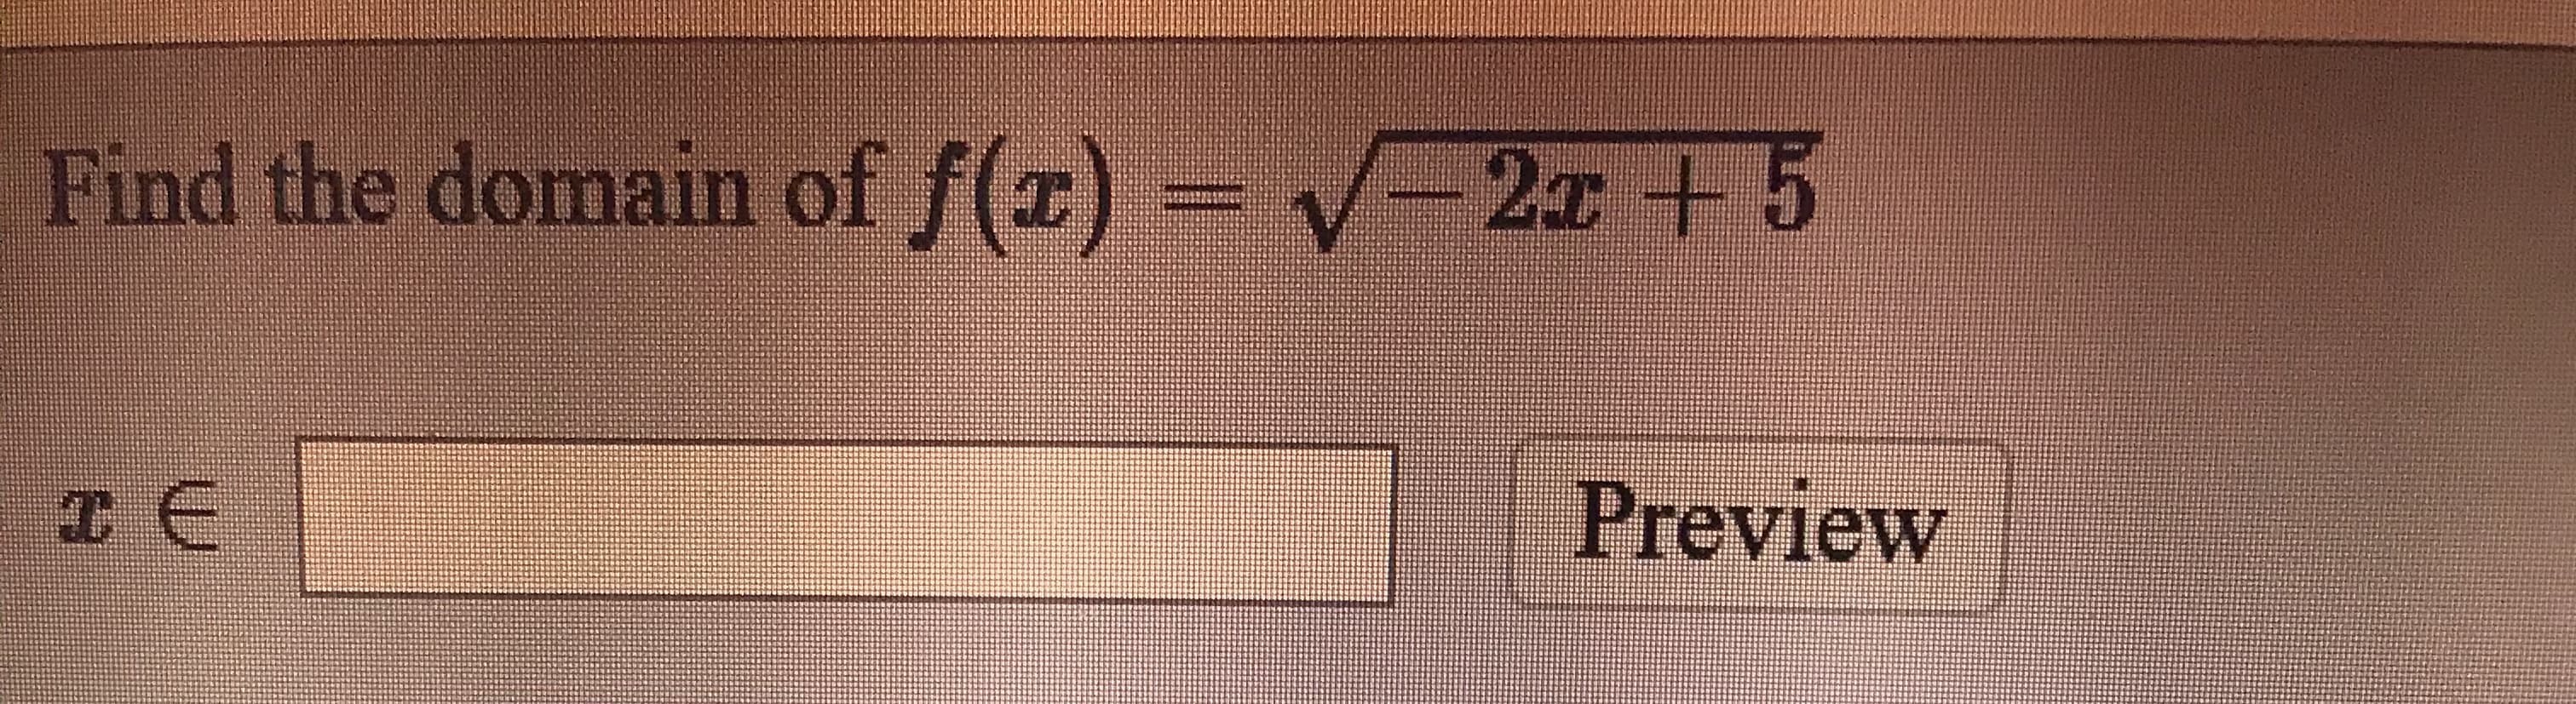 f(x) = V-2 + 5
